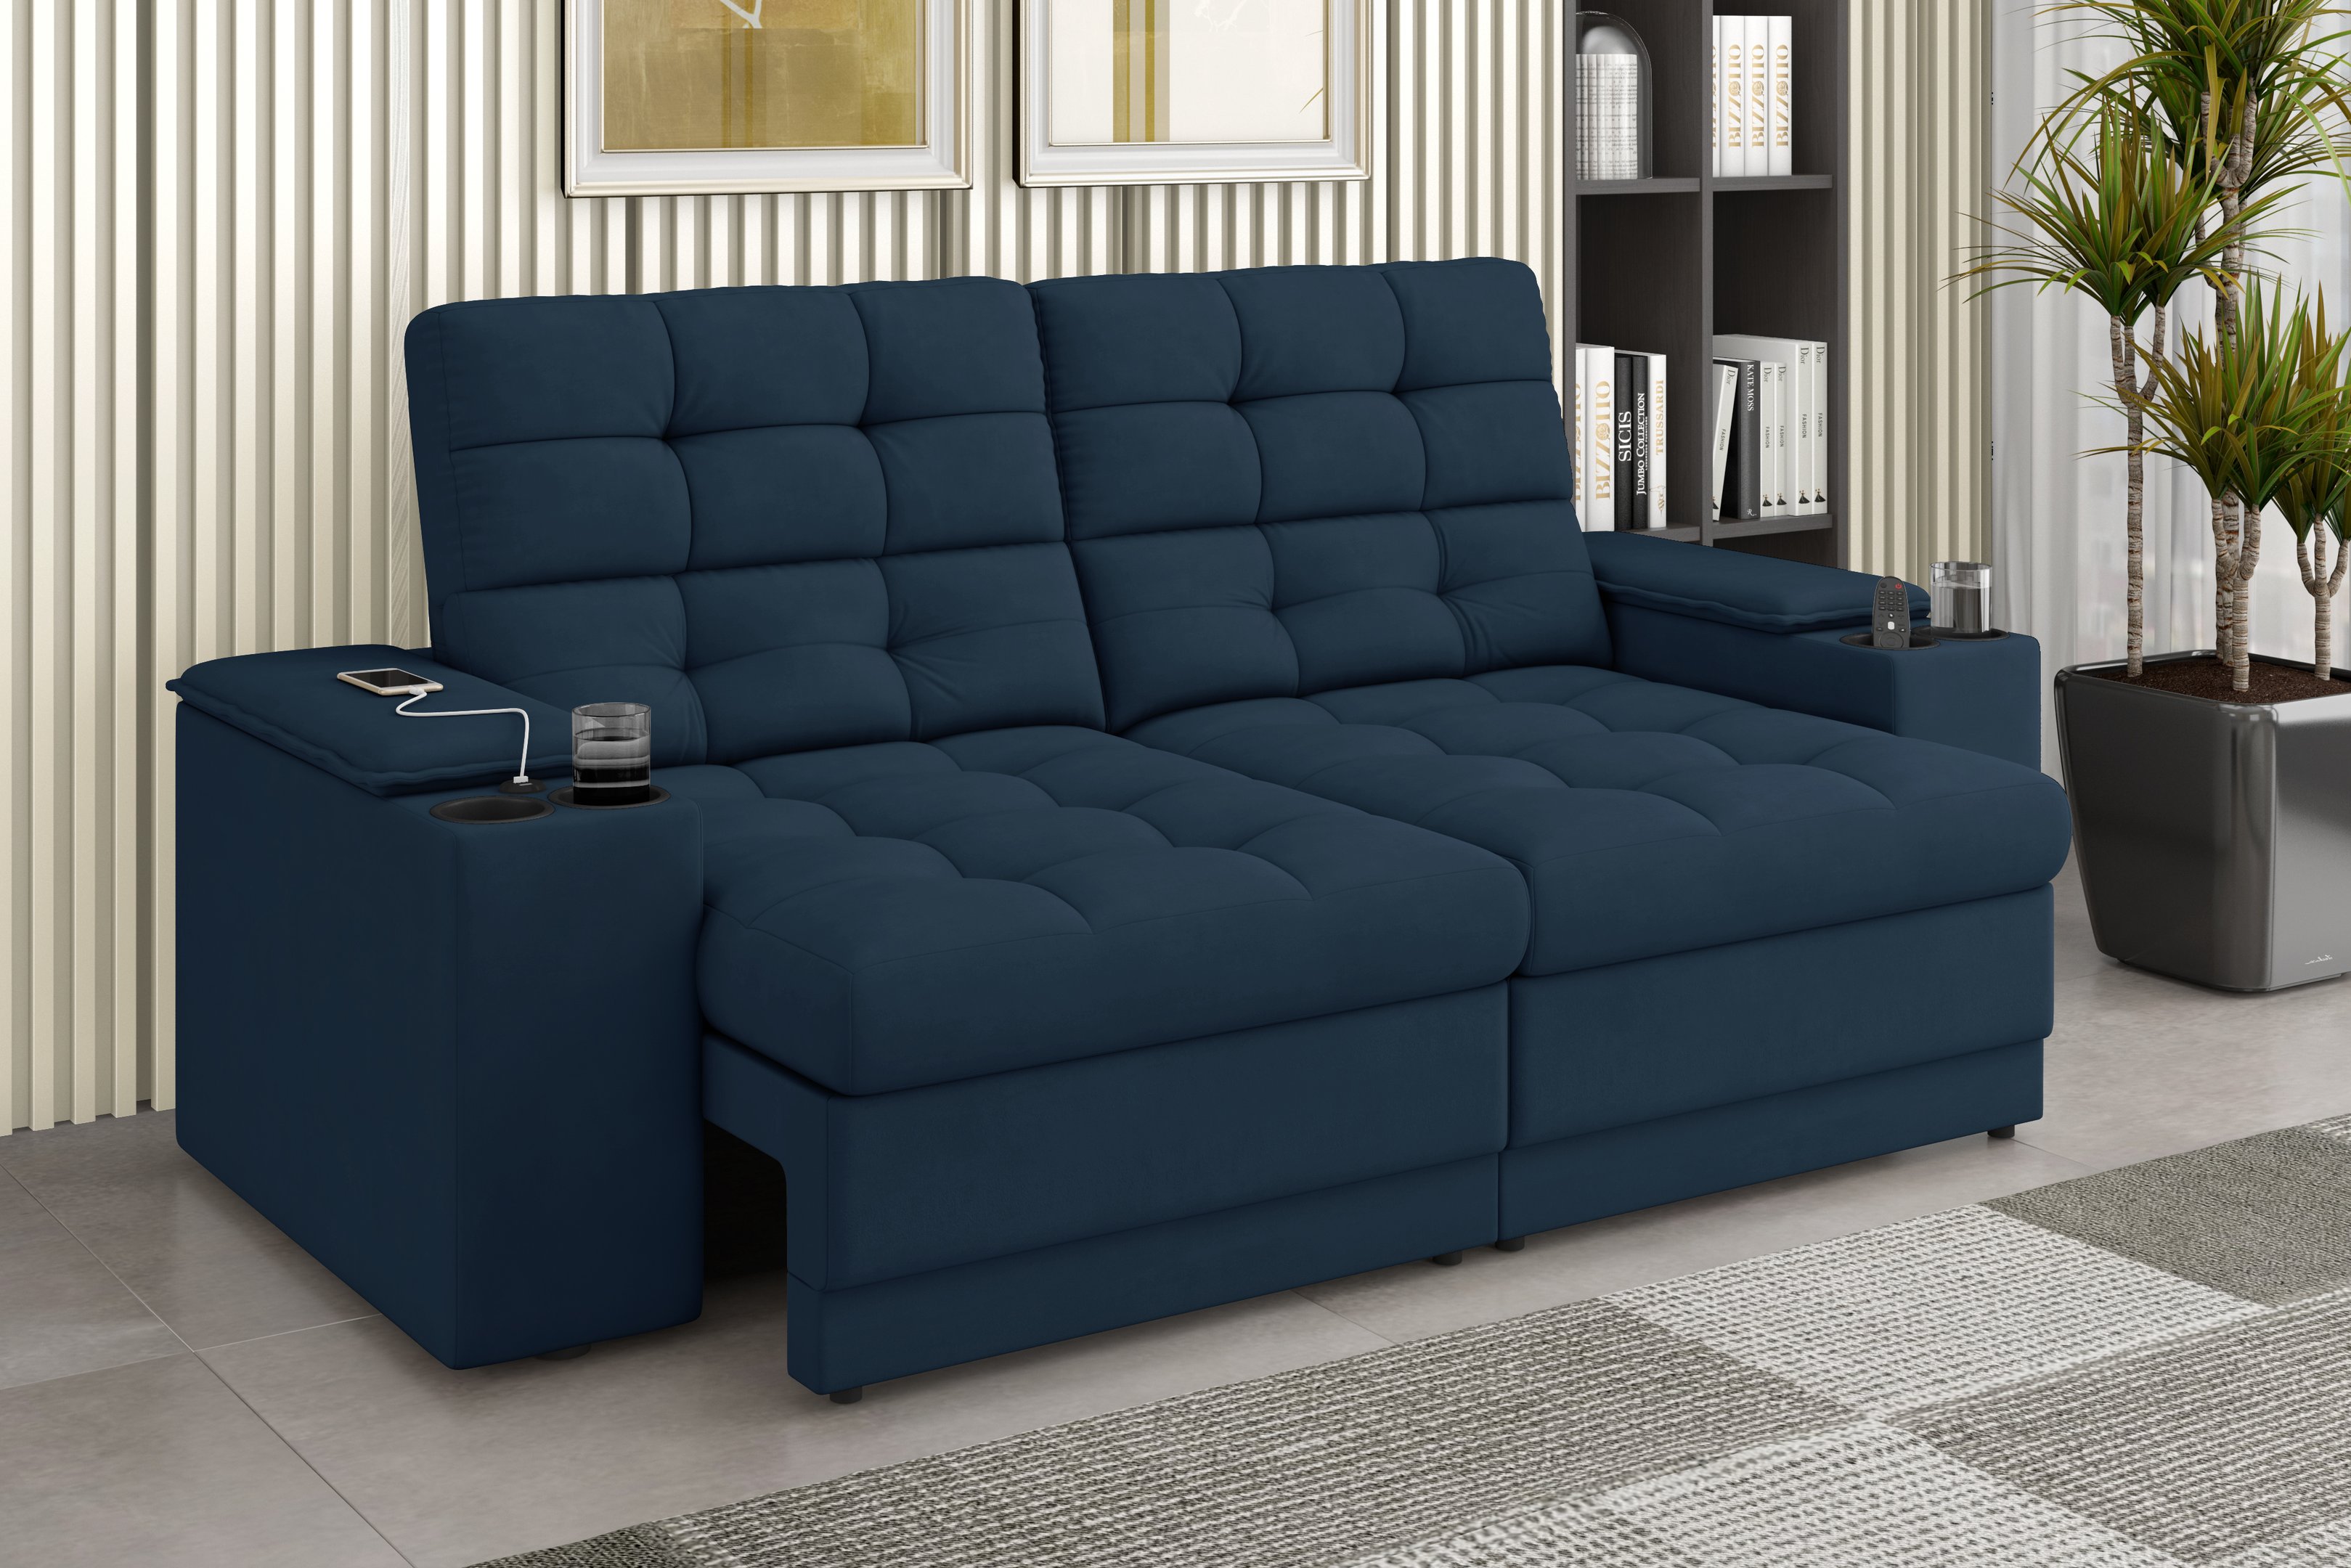 Sofá Confort Premium 1,70m Assento Retrátil/reclinável Porta Copos e Usb Suede Petróleo - Xflex